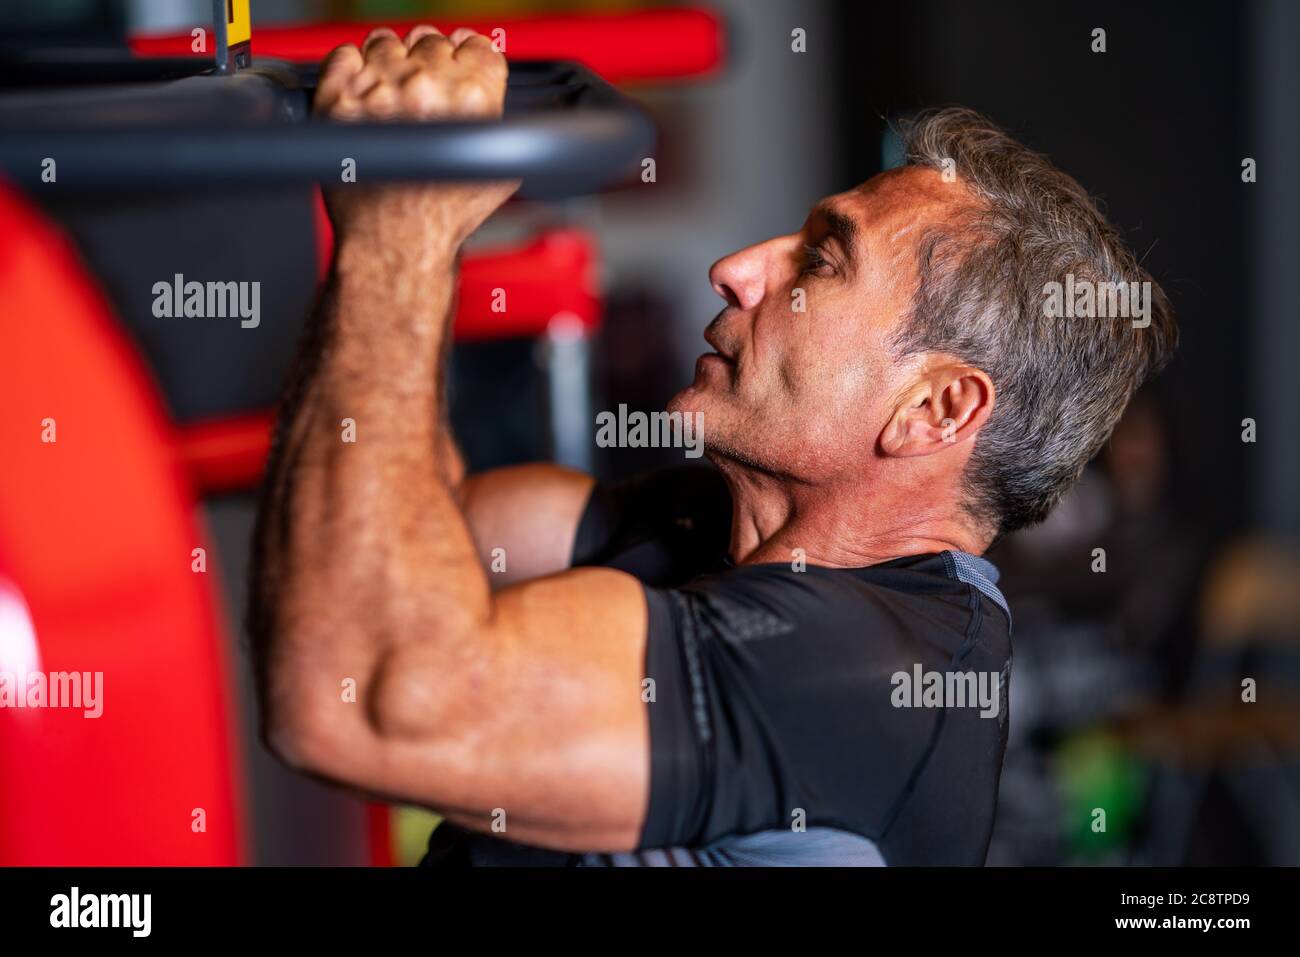 uomo che rafforza i muscoli facendo tirare-in su su su bar orizzontale in un centro di fitness. Foto di alta qualità Foto Stock